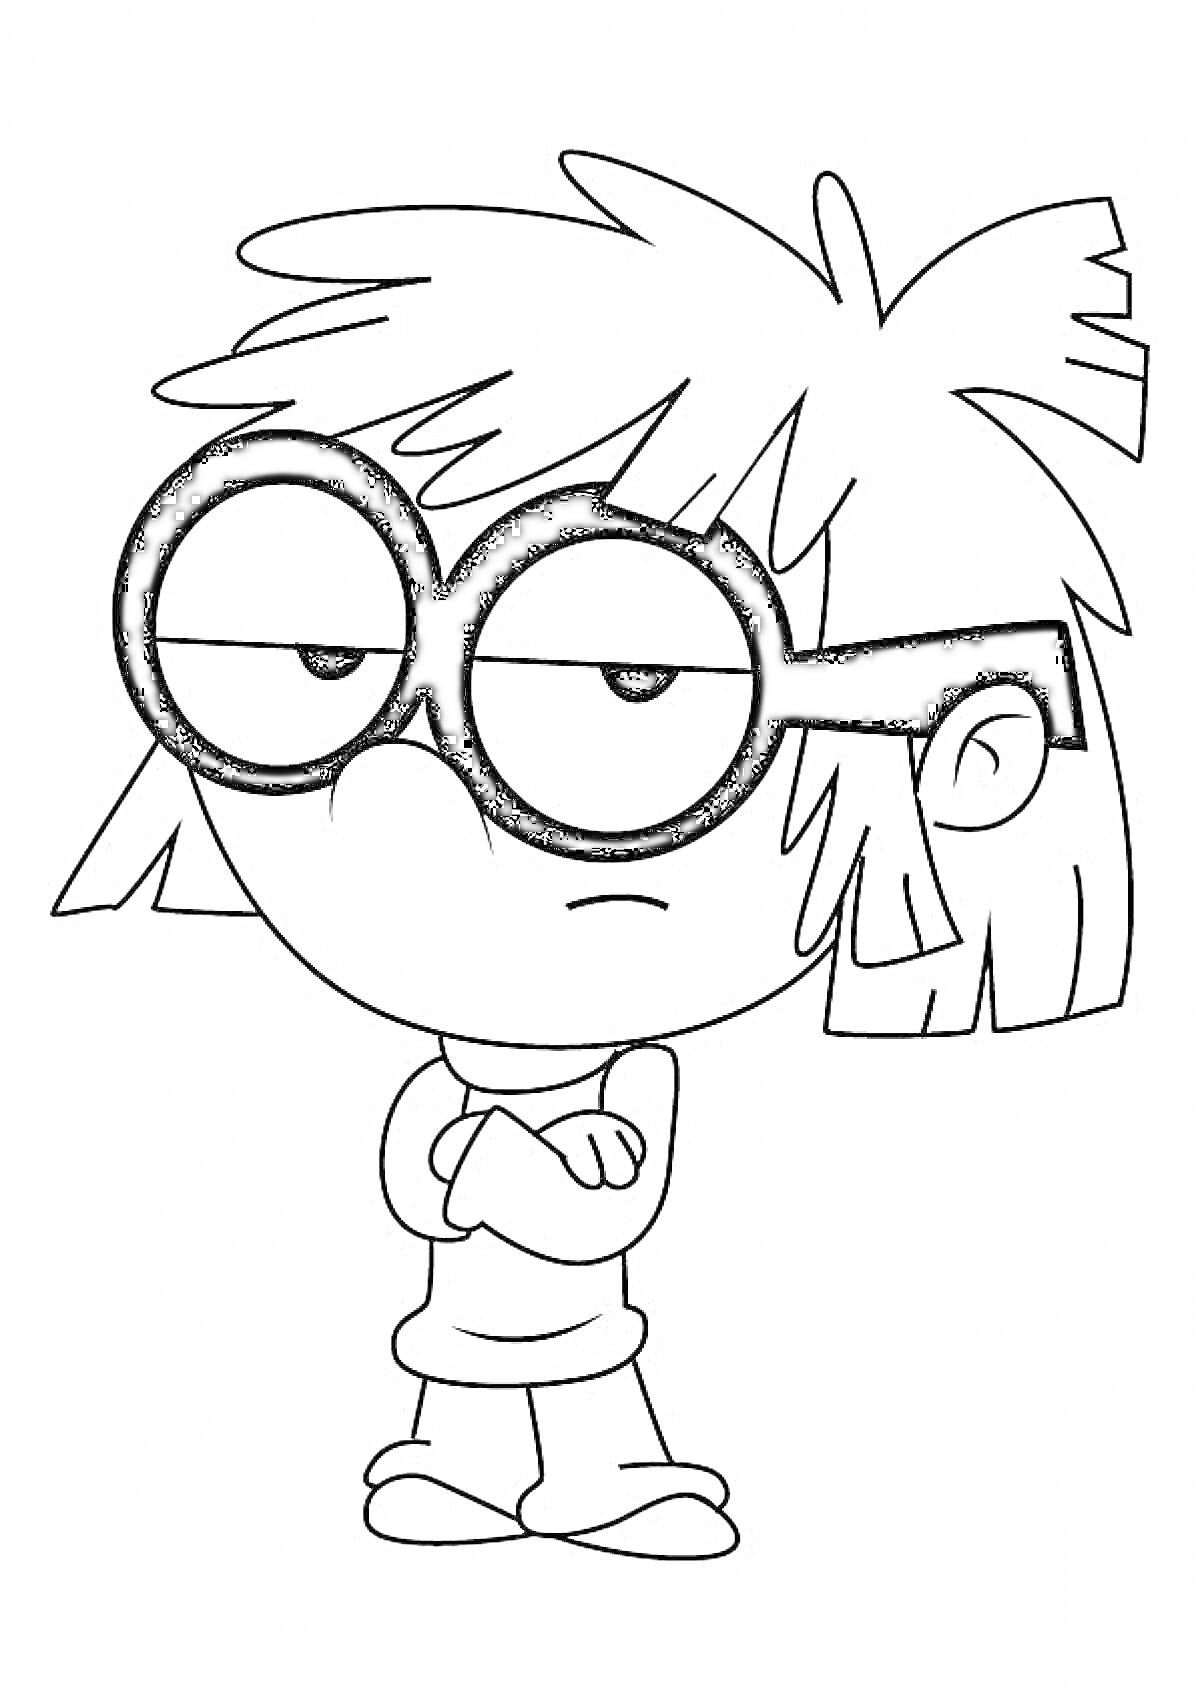 Раскраска Персонаж со скрещенными руками и очками в мультфильме 